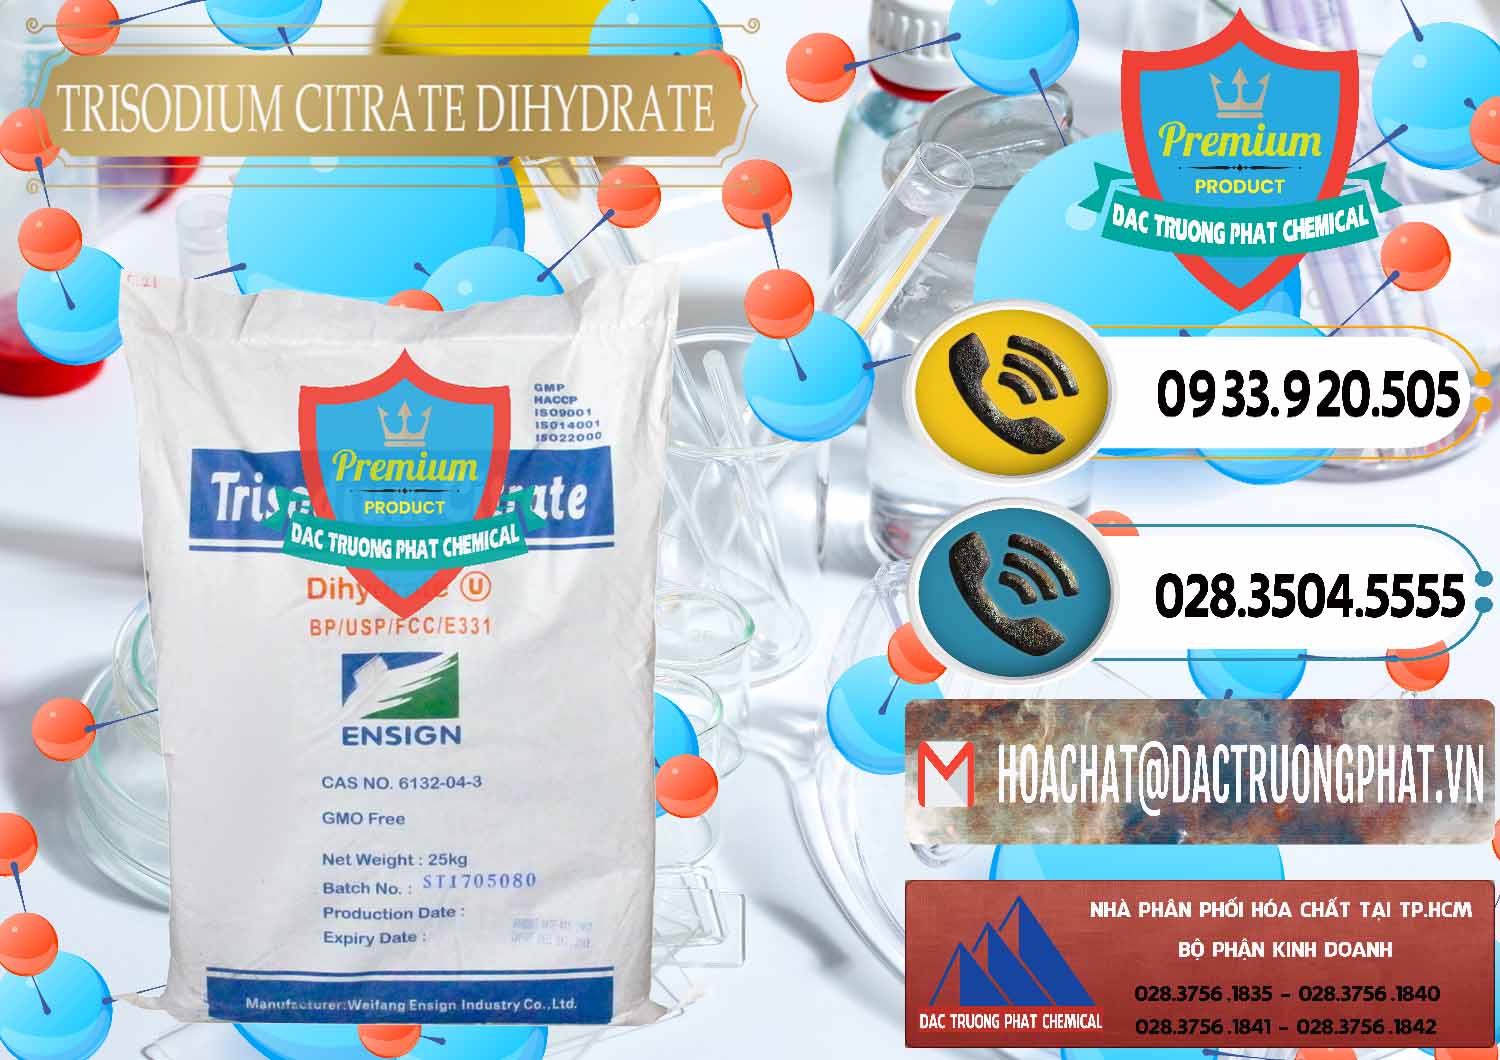 Nơi cung cấp & bán Trisodium Citrate Dihydrate - Na3C6H5O7 Weifang Trung Quốc China - 0324 - Chuyên cung cấp ( phân phối ) hóa chất tại TP.HCM - hoachatdetnhuom.vn